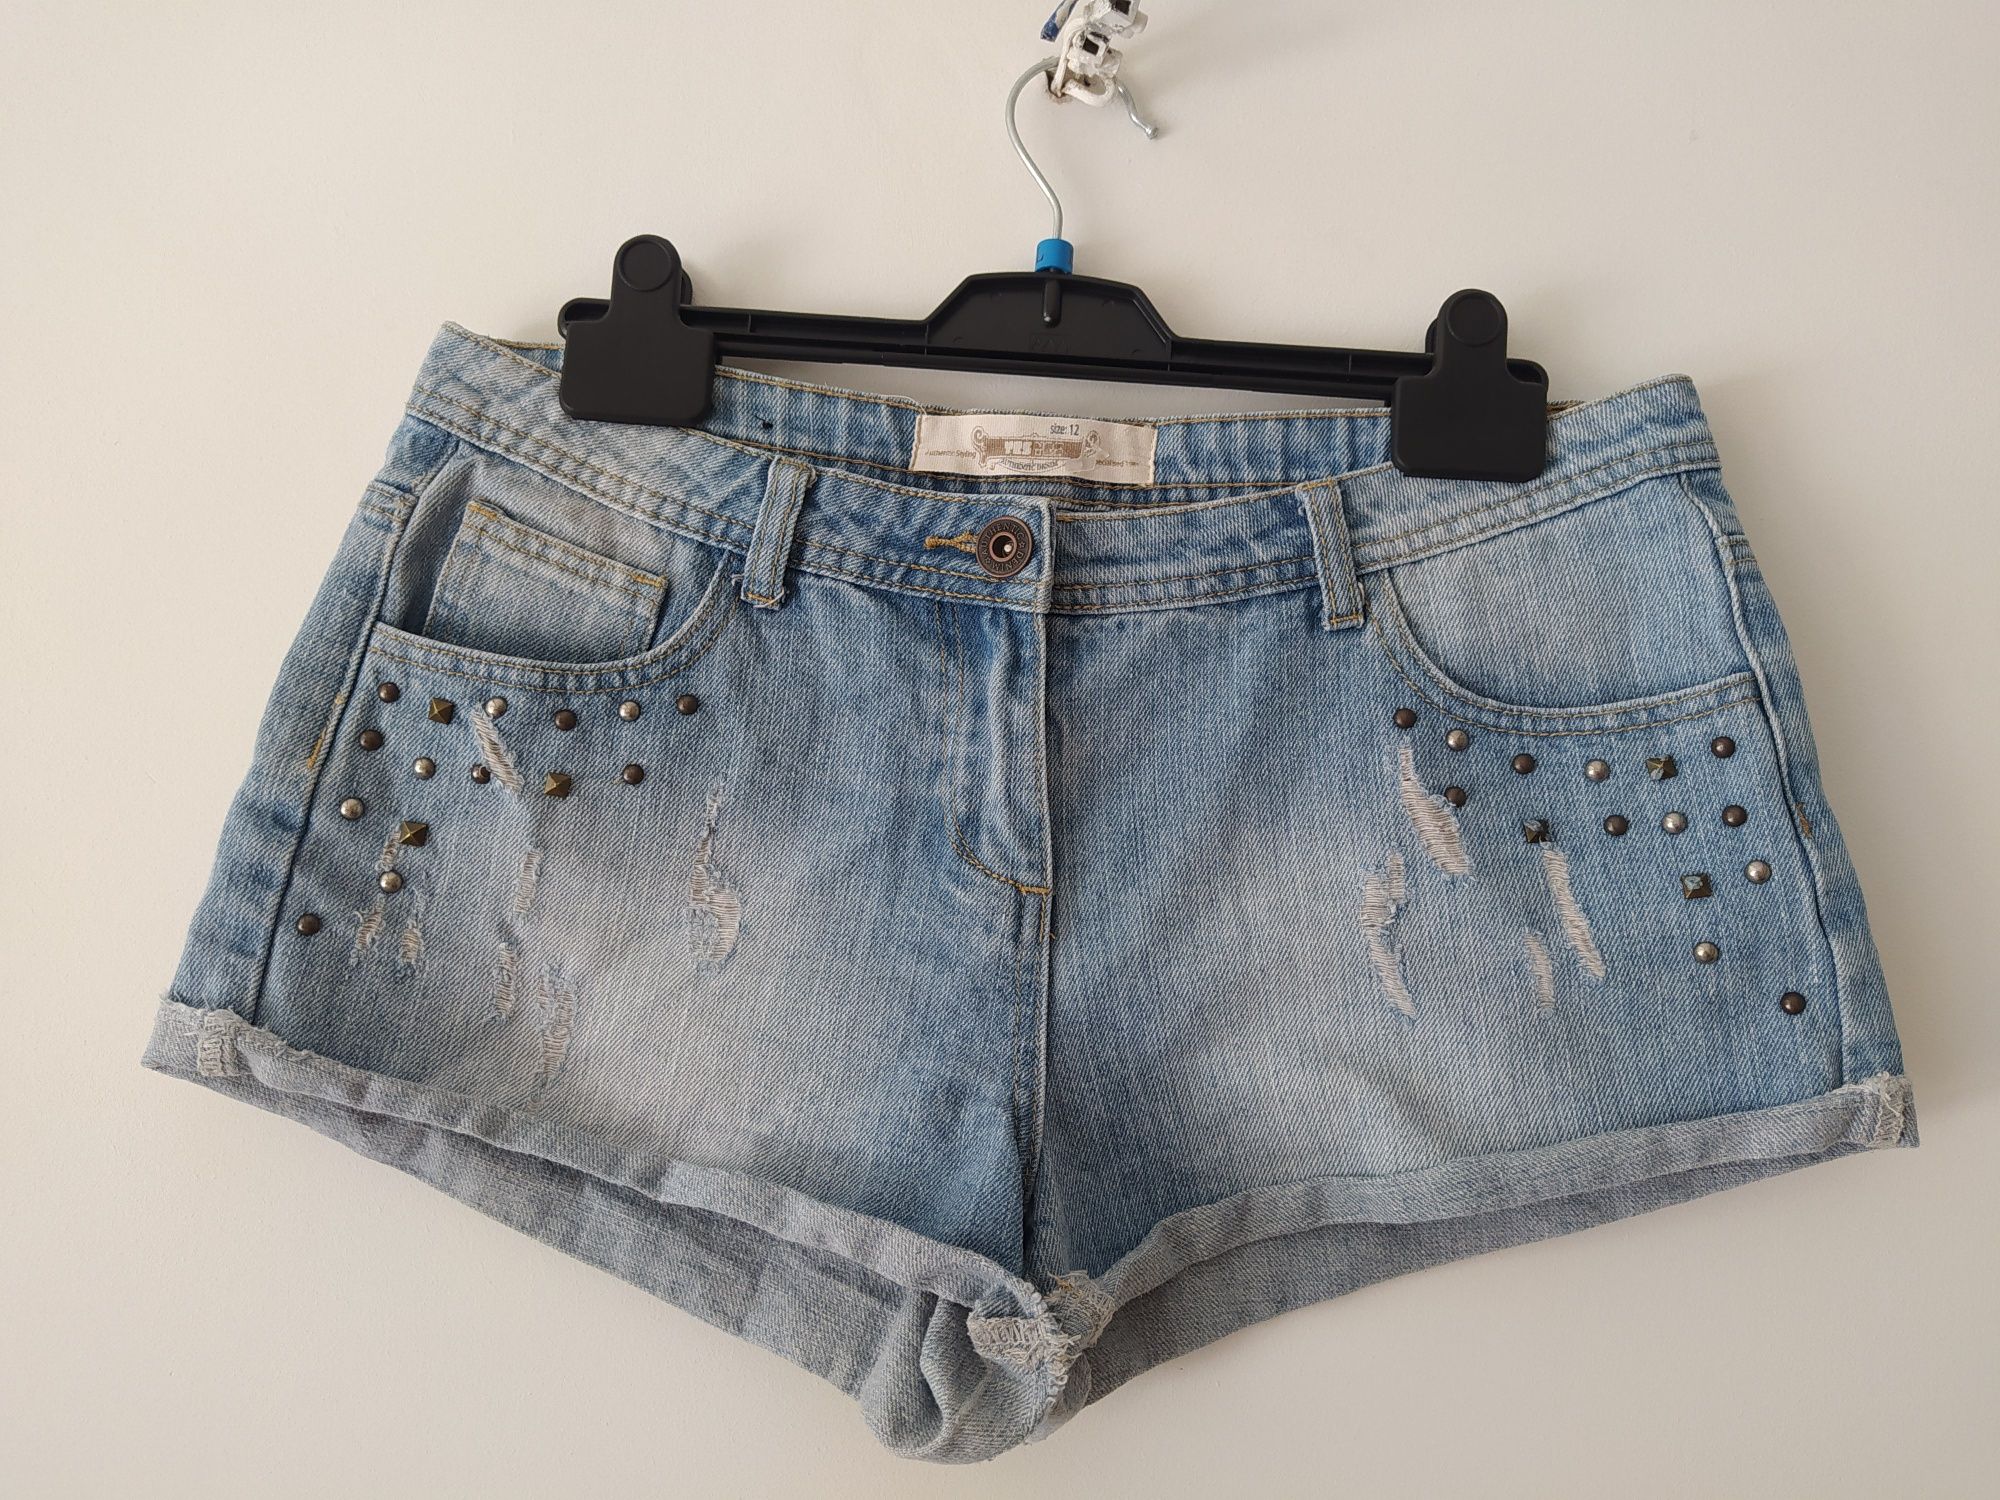 Krótkie spodenki szorty damskie jeansowe jasne bawełna wiskoza r.40 L